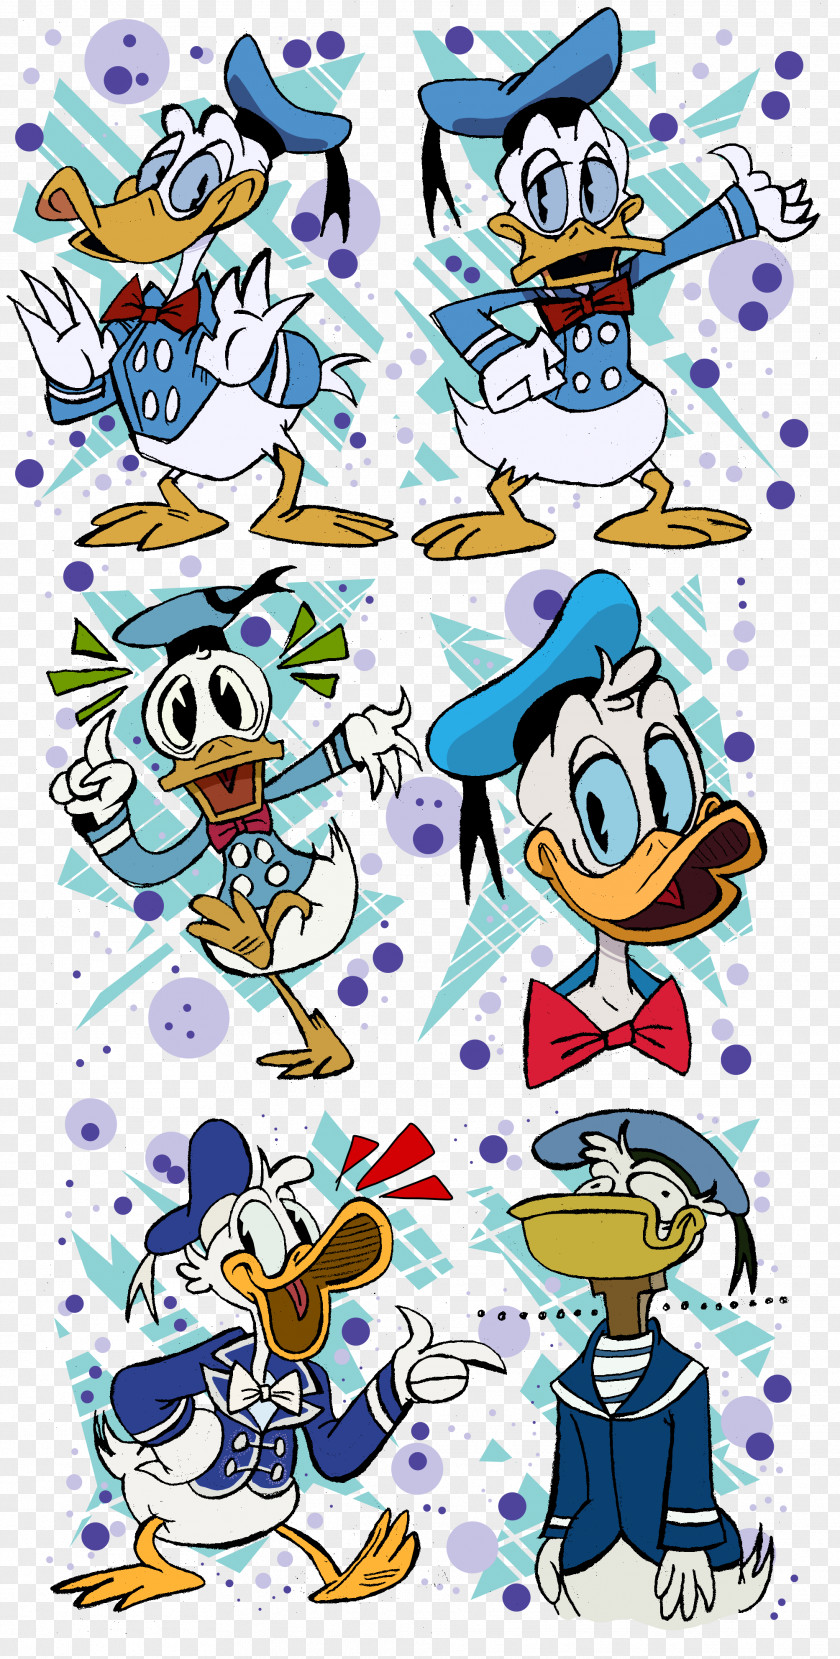 Donald Duck Daisy Goofy The Walt Disney Company PNG